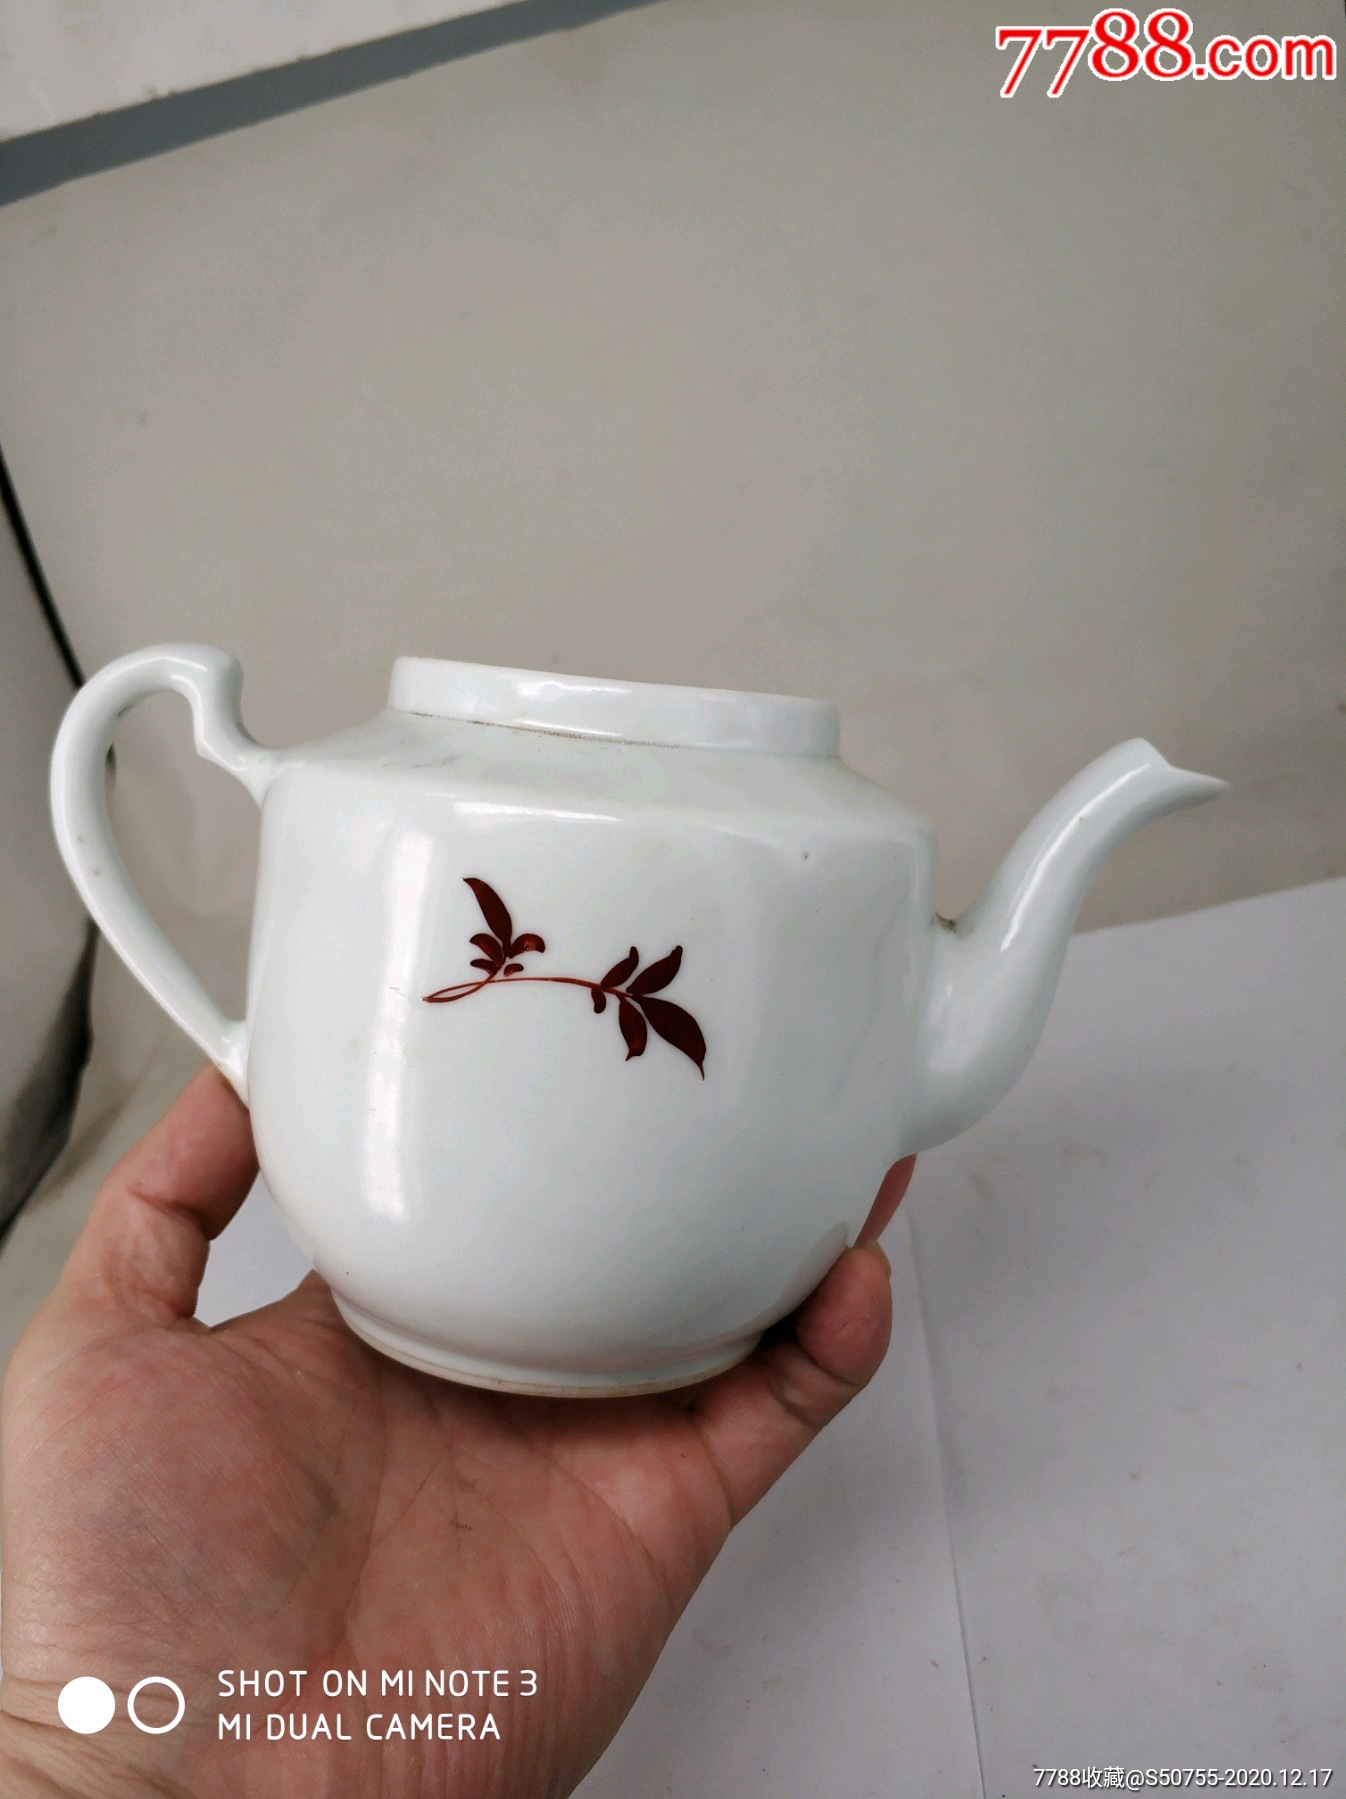 60年代景德镇瓷器茶壶图片